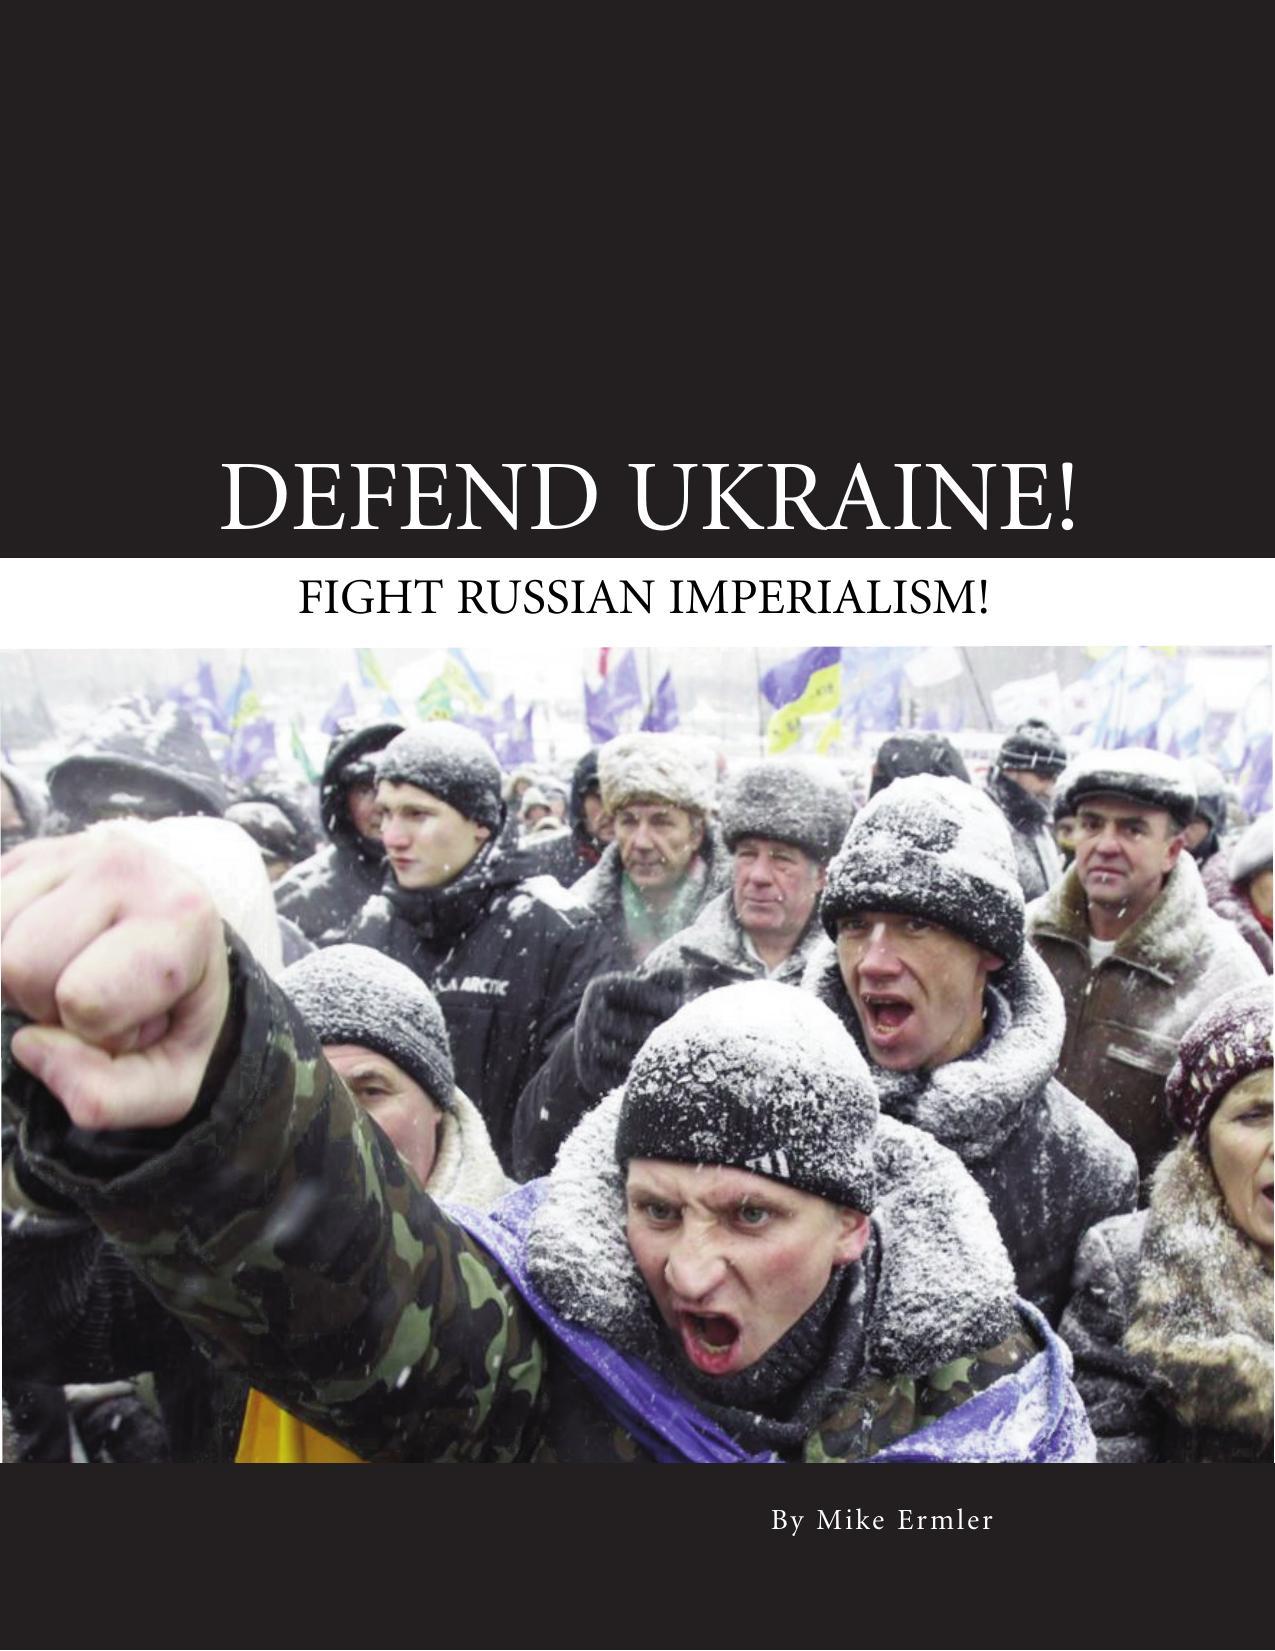 m-e-mike-ermler-defend-ukraine-1.jpg